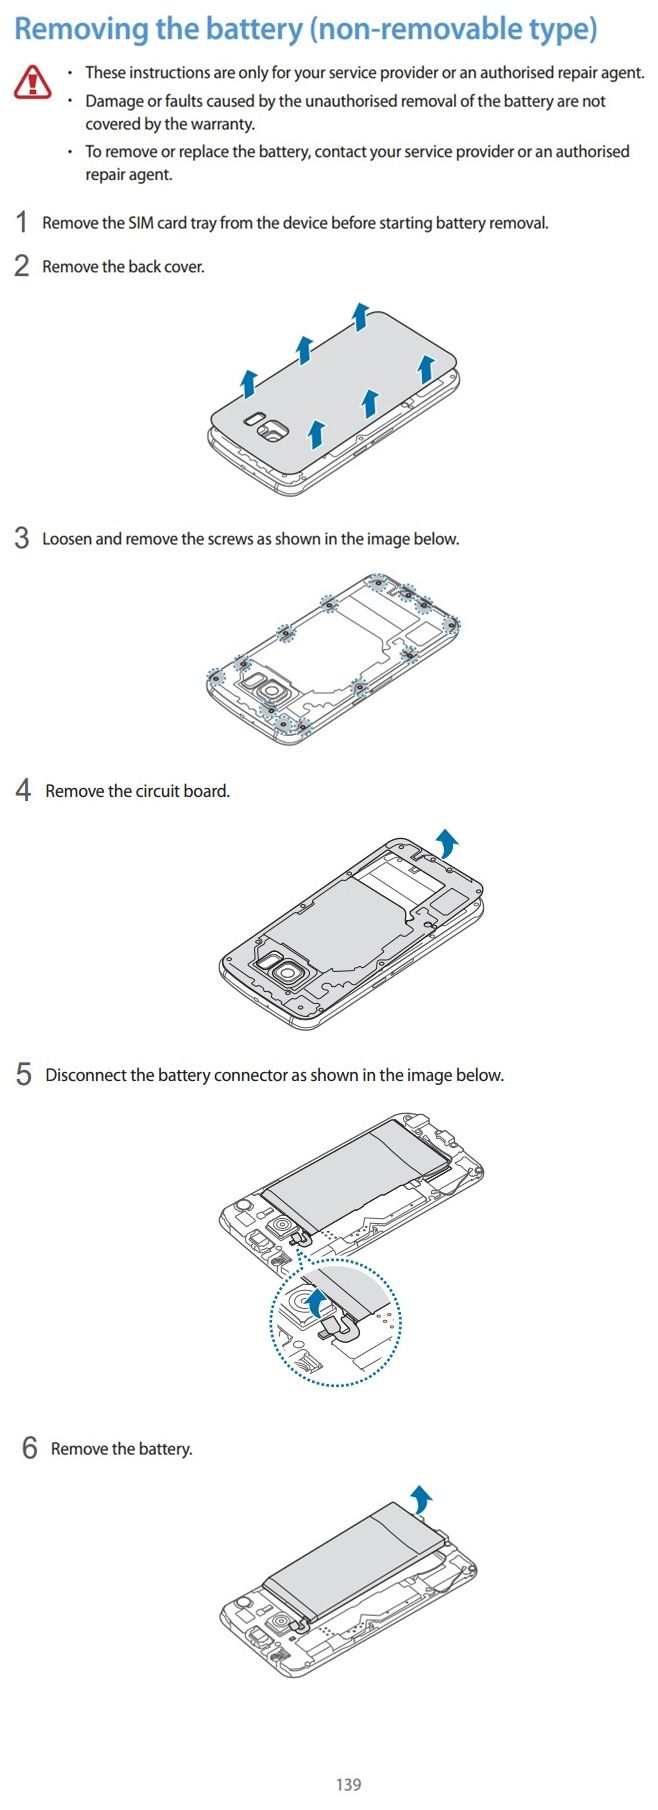 Samsung สอนวิธีถอดเปลี่ยนแบต Galaxy S6 ในคู่มือผู้ใช้ แต่อย่าทำดีกว่า…